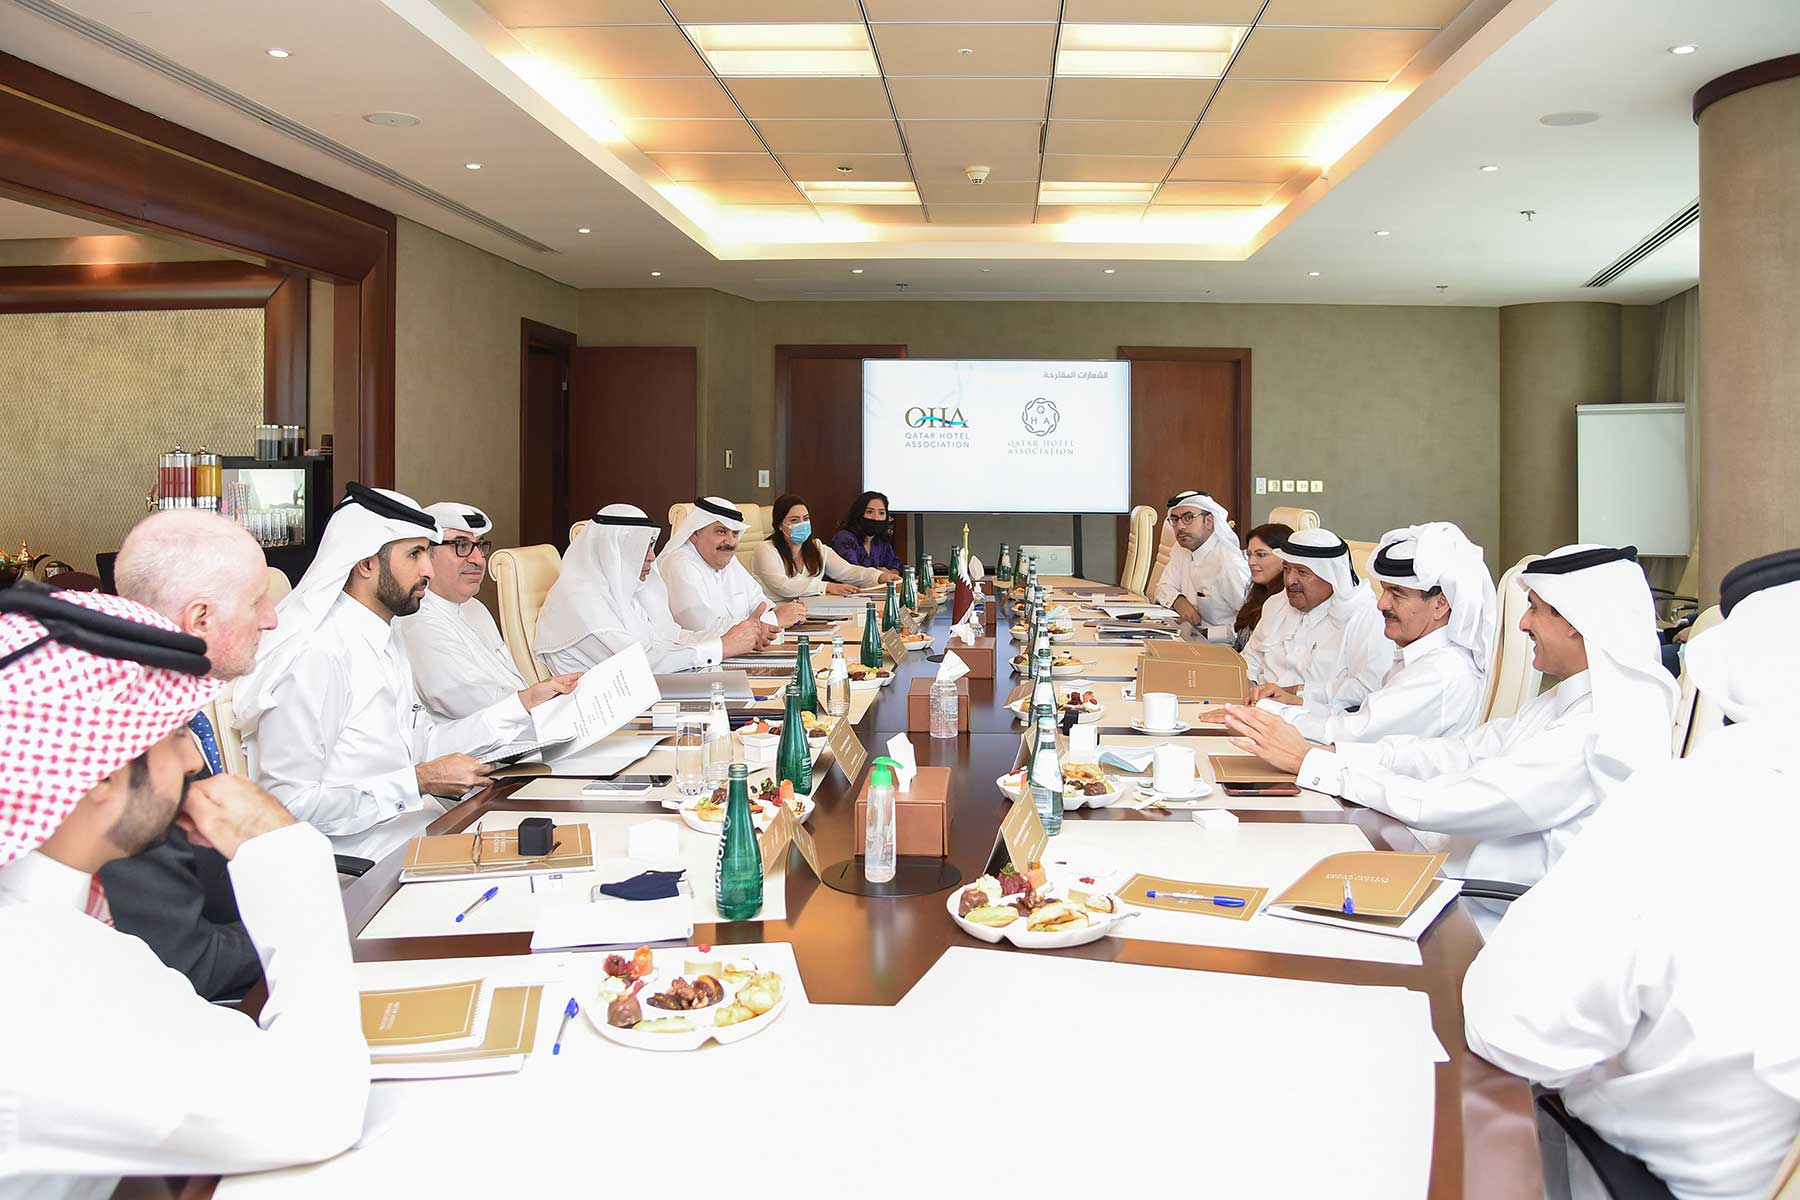 إطلاق رابطة فنادق قطر تحت مظلة رابطة رجال الأعمال القطريين، و انعقاد اجتماعها التأسيسي الأول في مقر رابطة رجال الأعمال القطريين